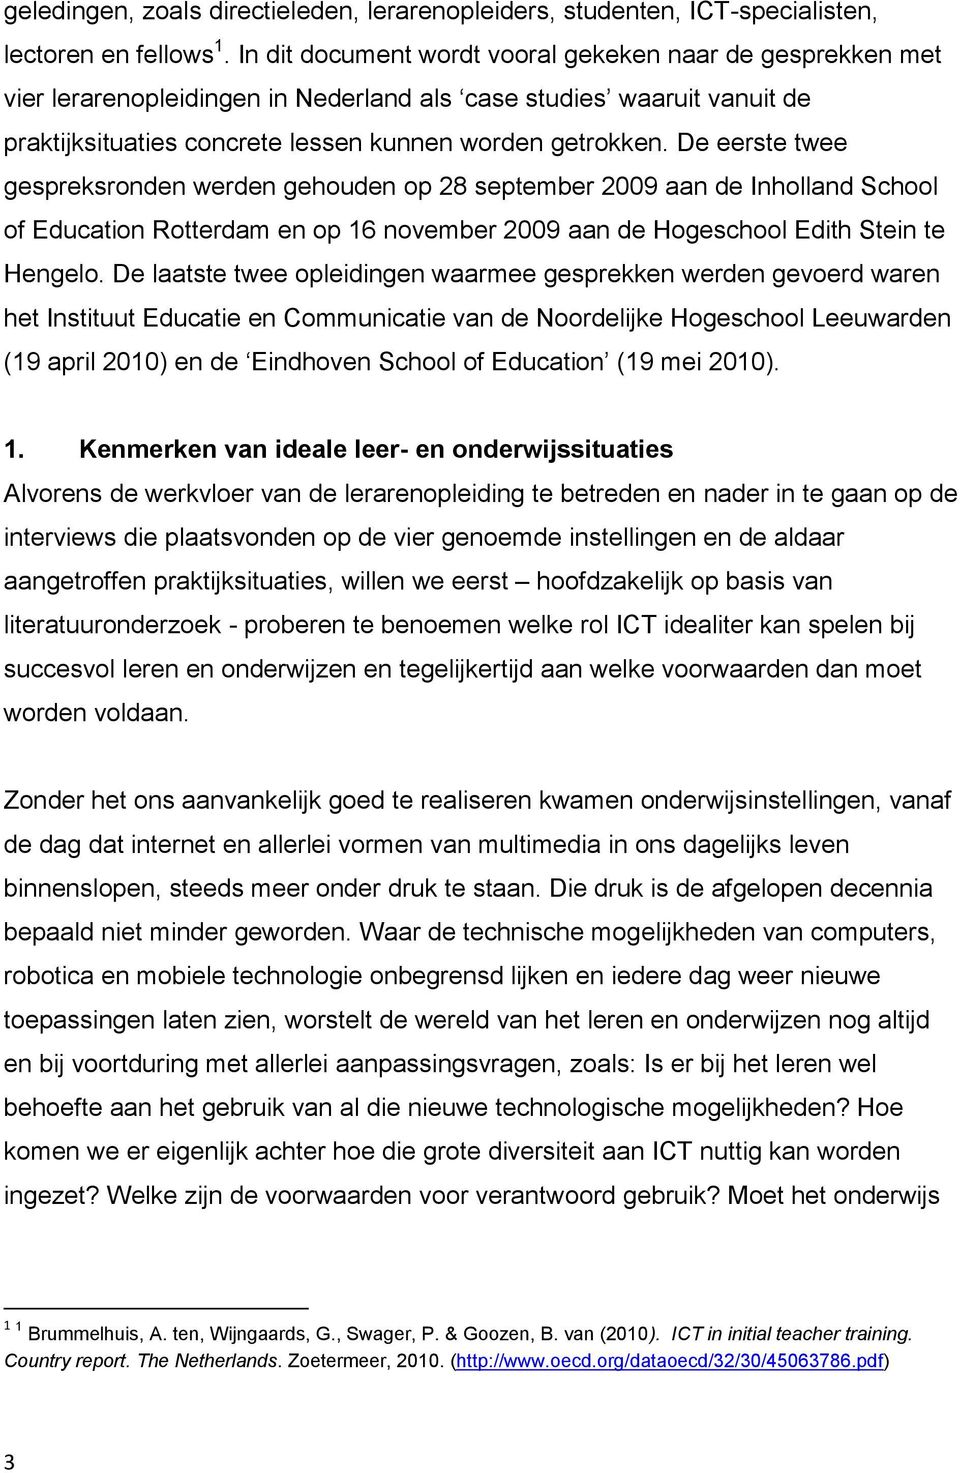 De eerste twee gespreksronden werden gehouden op 28 september 2009 aan de Inholland School of Education Rotterdam en op 16 november 2009 aan de Hogeschool Edith Stein te Hengelo.